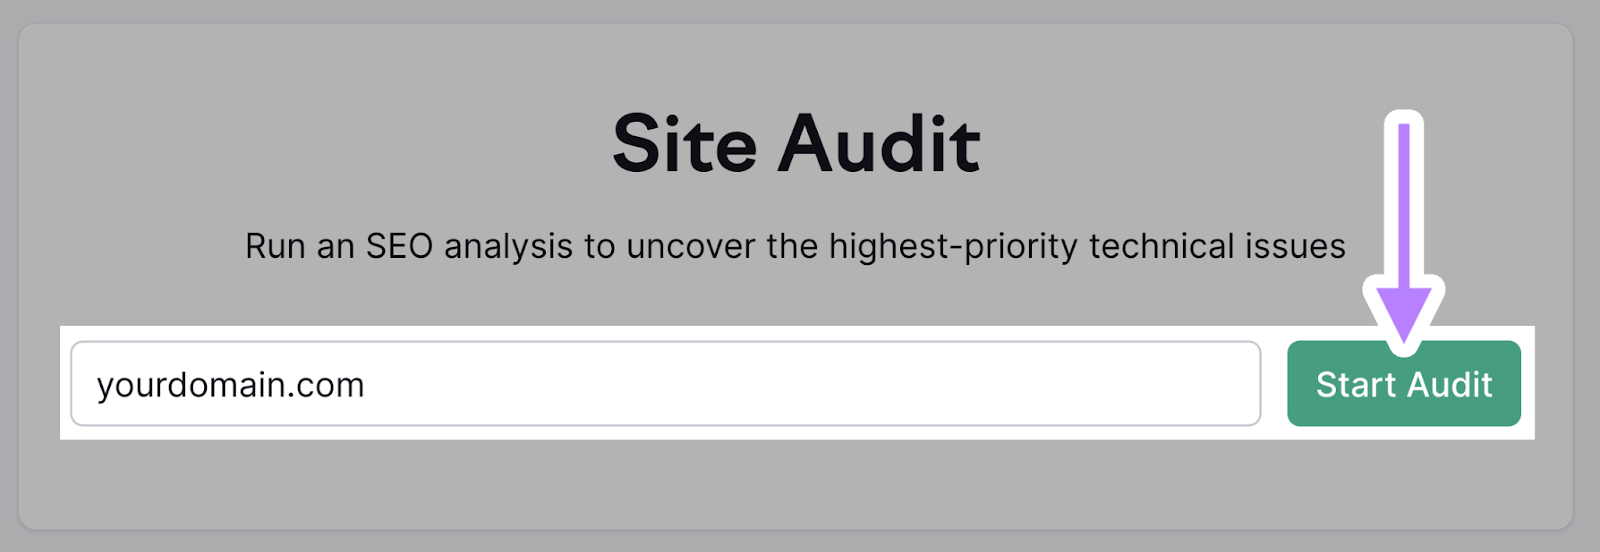 Site Audit tool